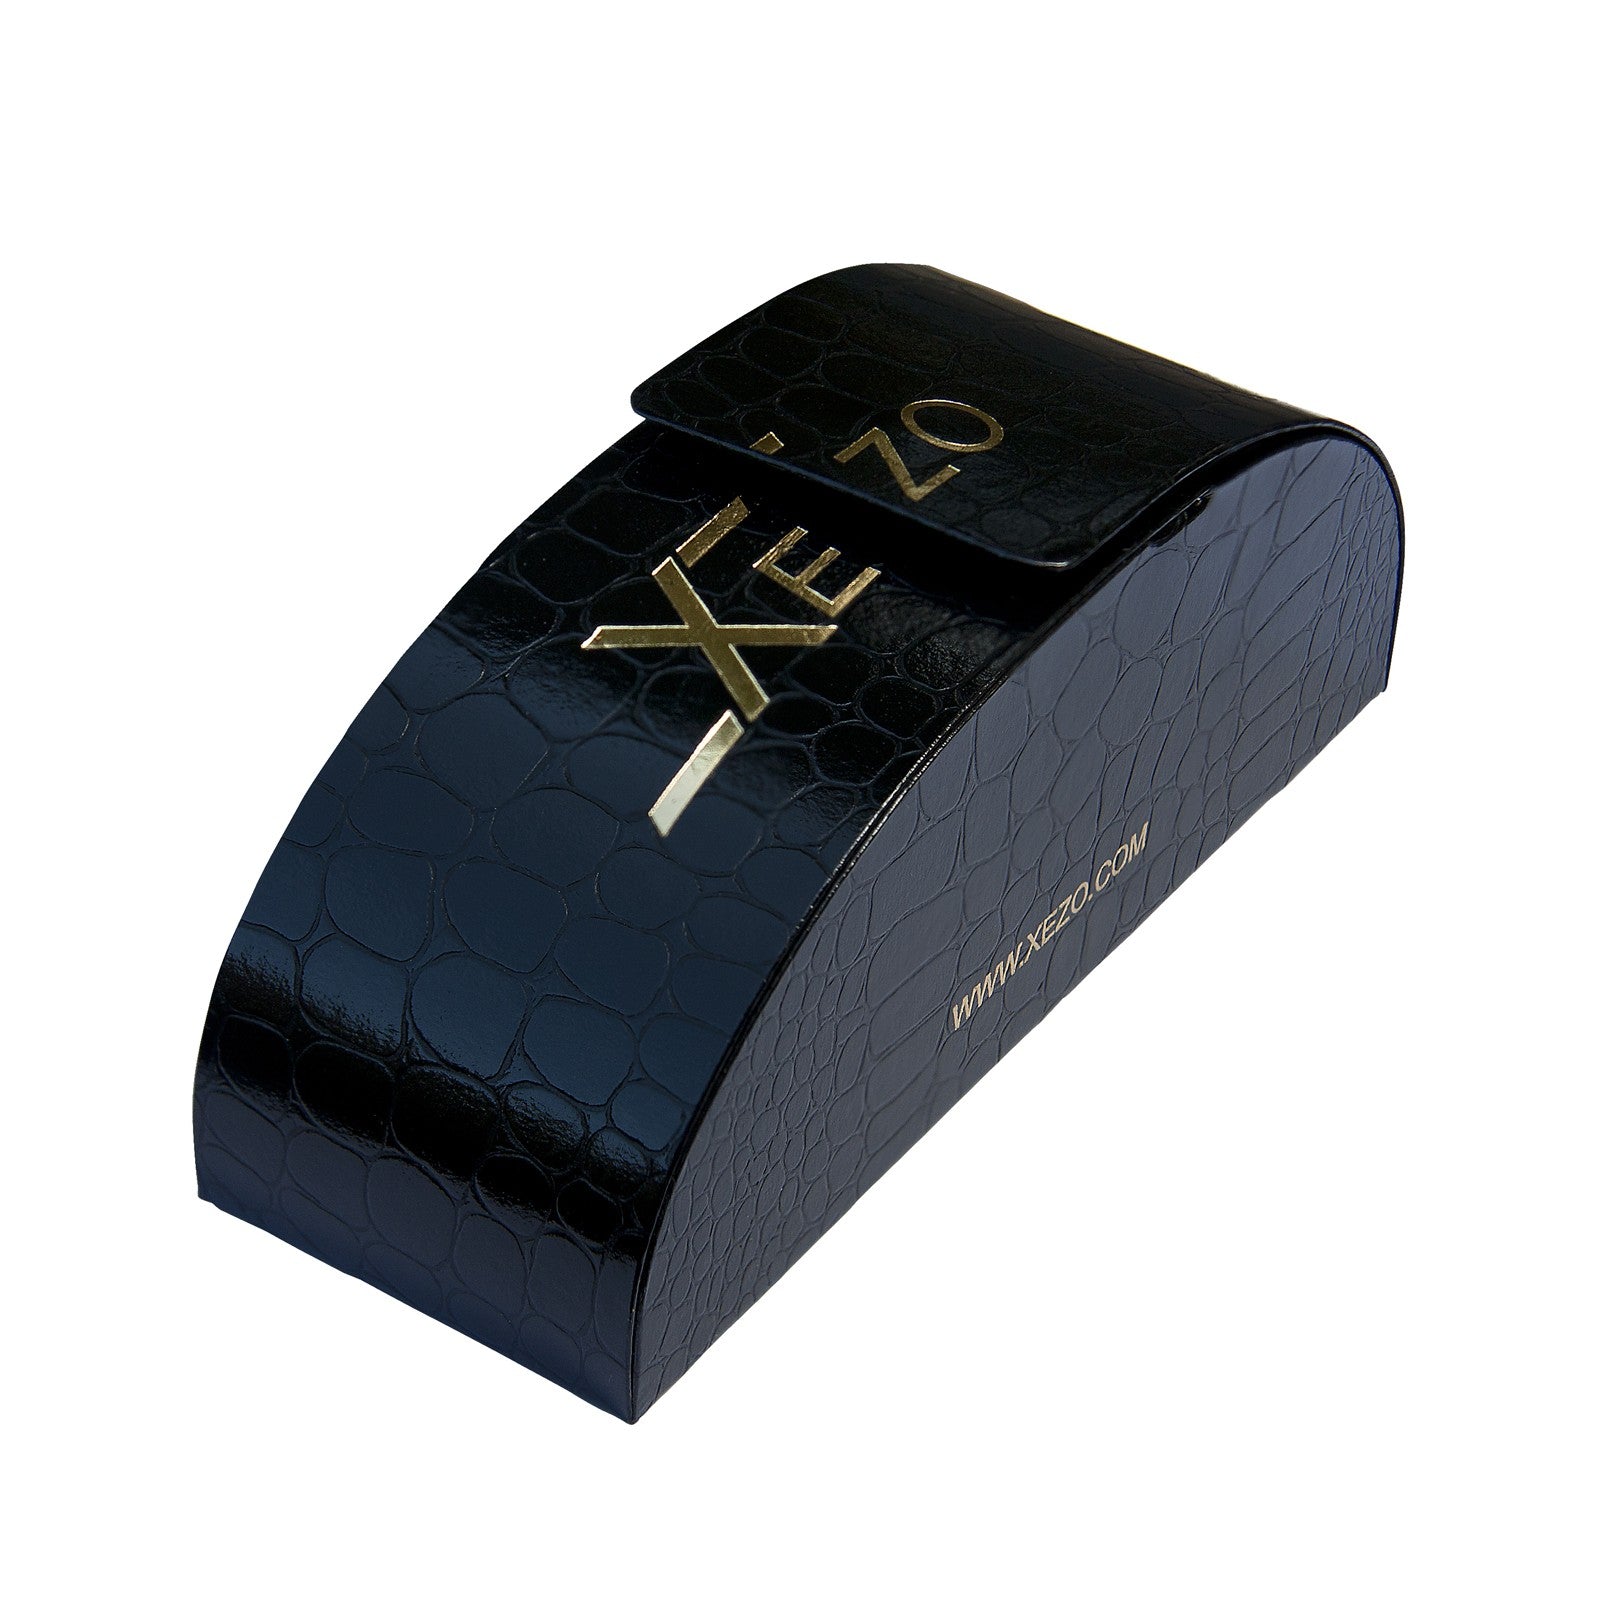 Xezo - Black gift box of the Incognito 1400 B sunglasses